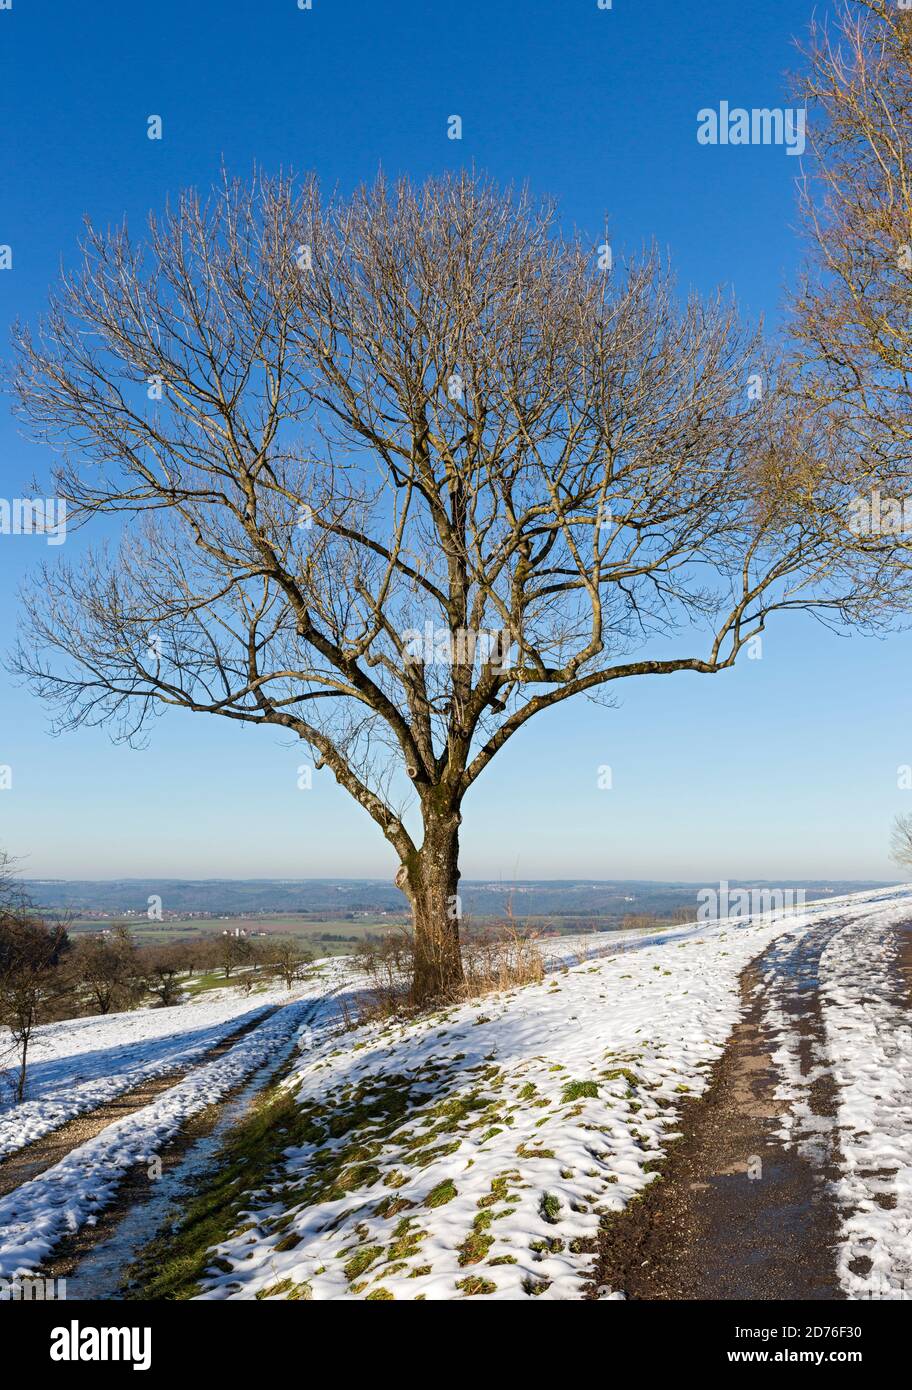 Stauferland, Landschaft, Schnee, Fahrweg, Baum Stock Photo